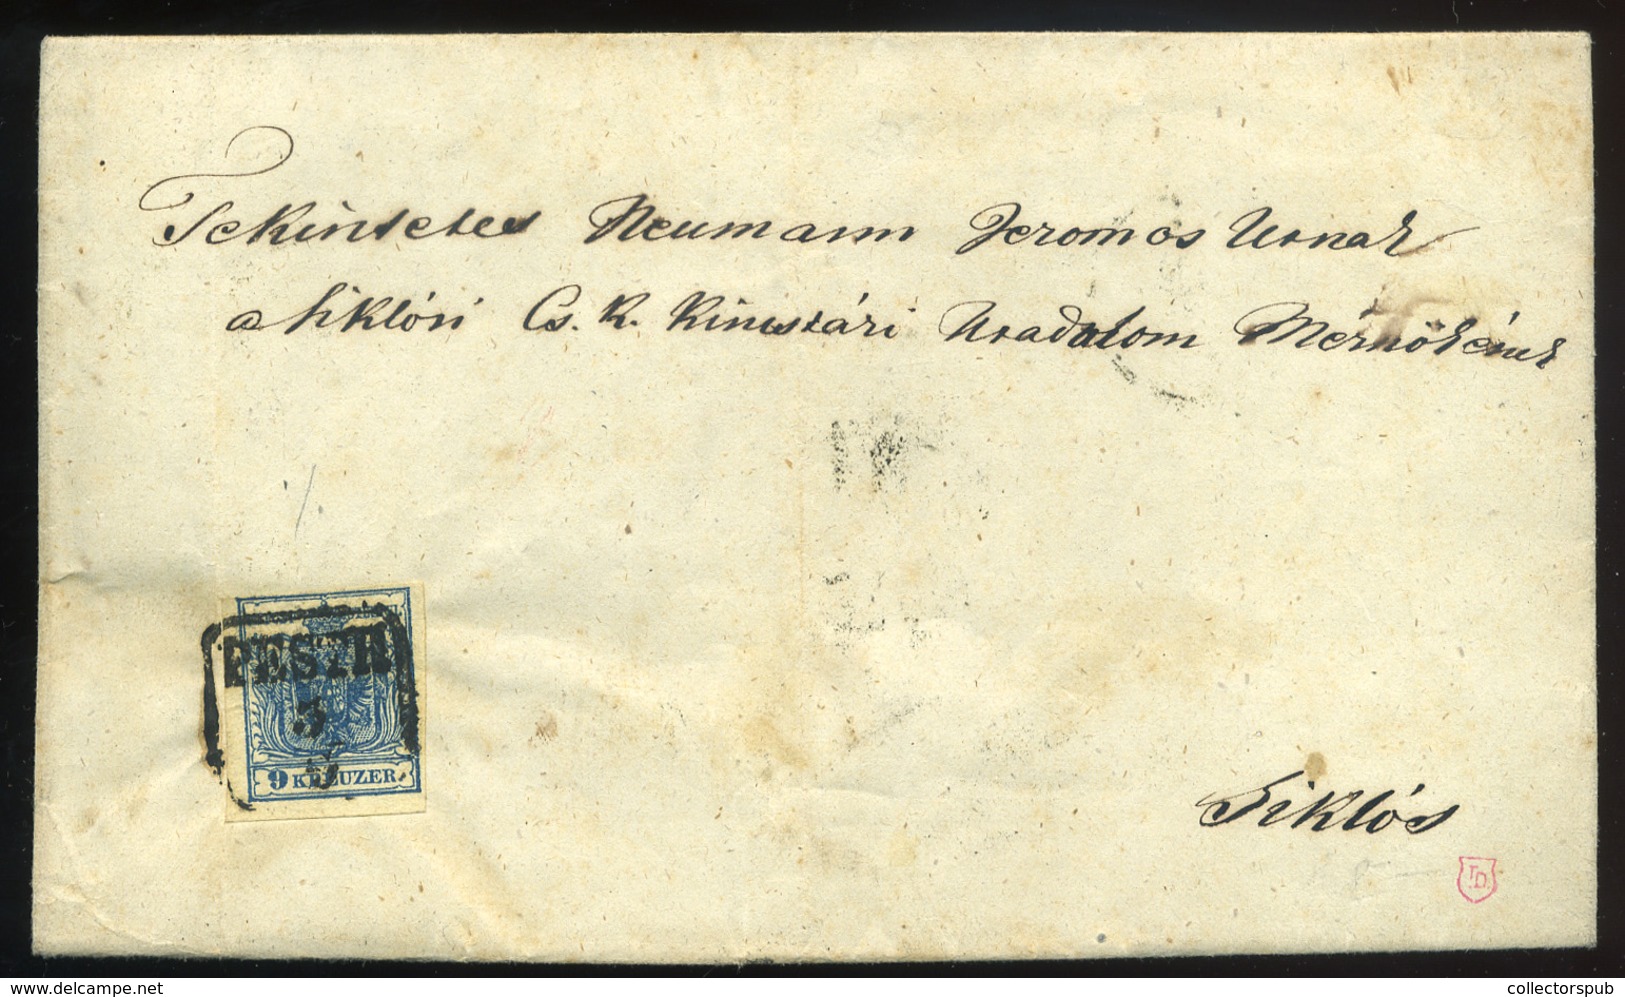 PEST 1854. Szép 9Kr-os Levél Siklósra Küldve - Used Stamps